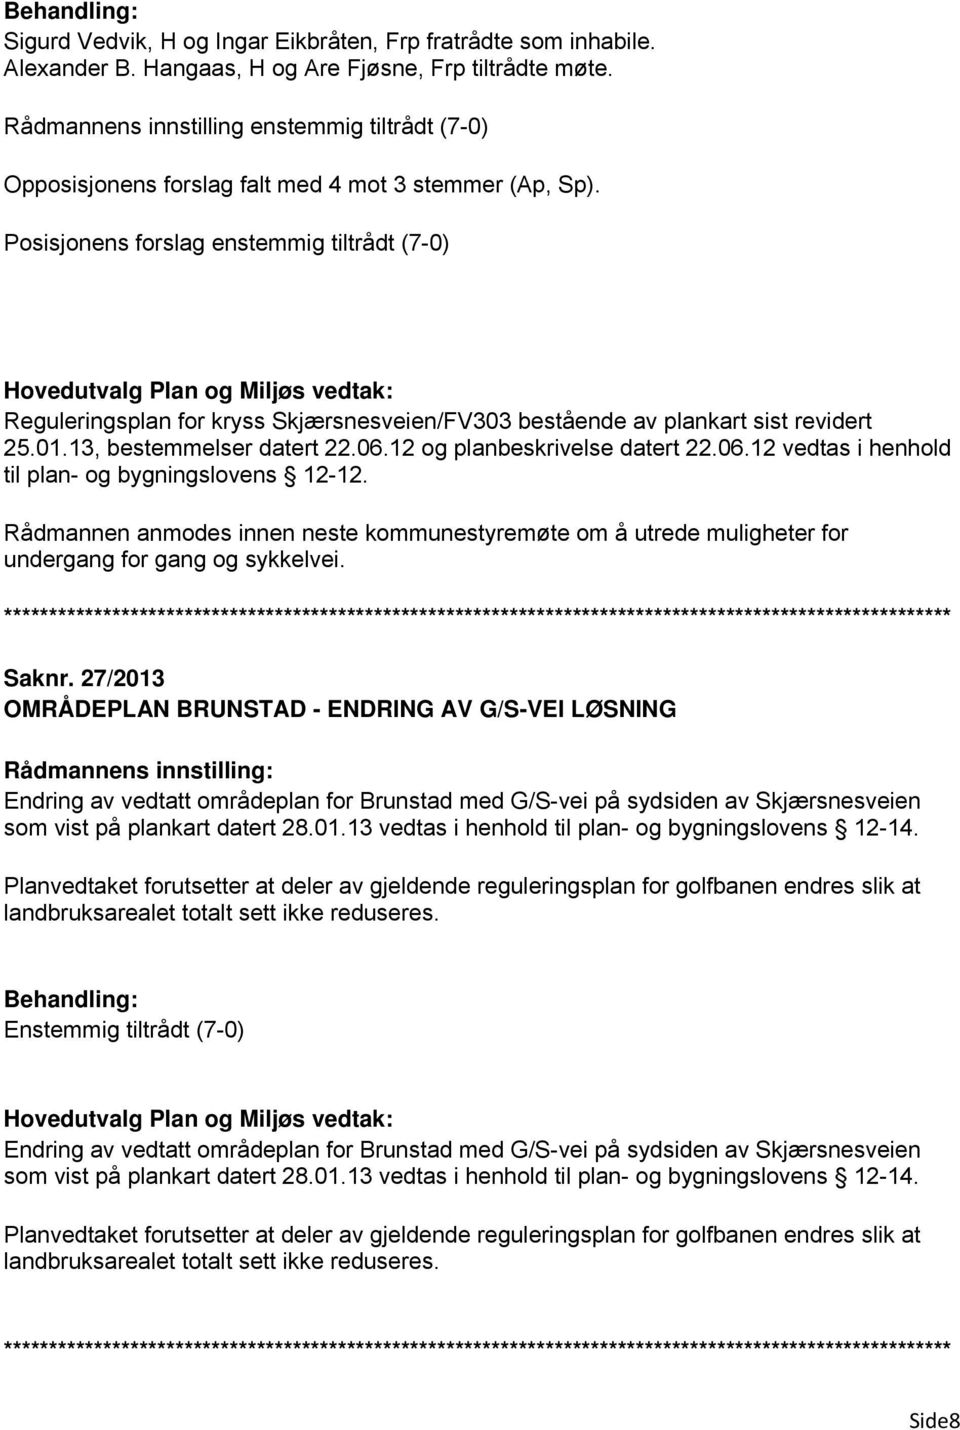 Posisjonens forslag enstemmig tiltrådt (7-0) Reguleringsplan for kryss Skjærsnesveien/FV303 bestående av plankart sist revidert 25.01.13, bestemmelser datert 22.06.